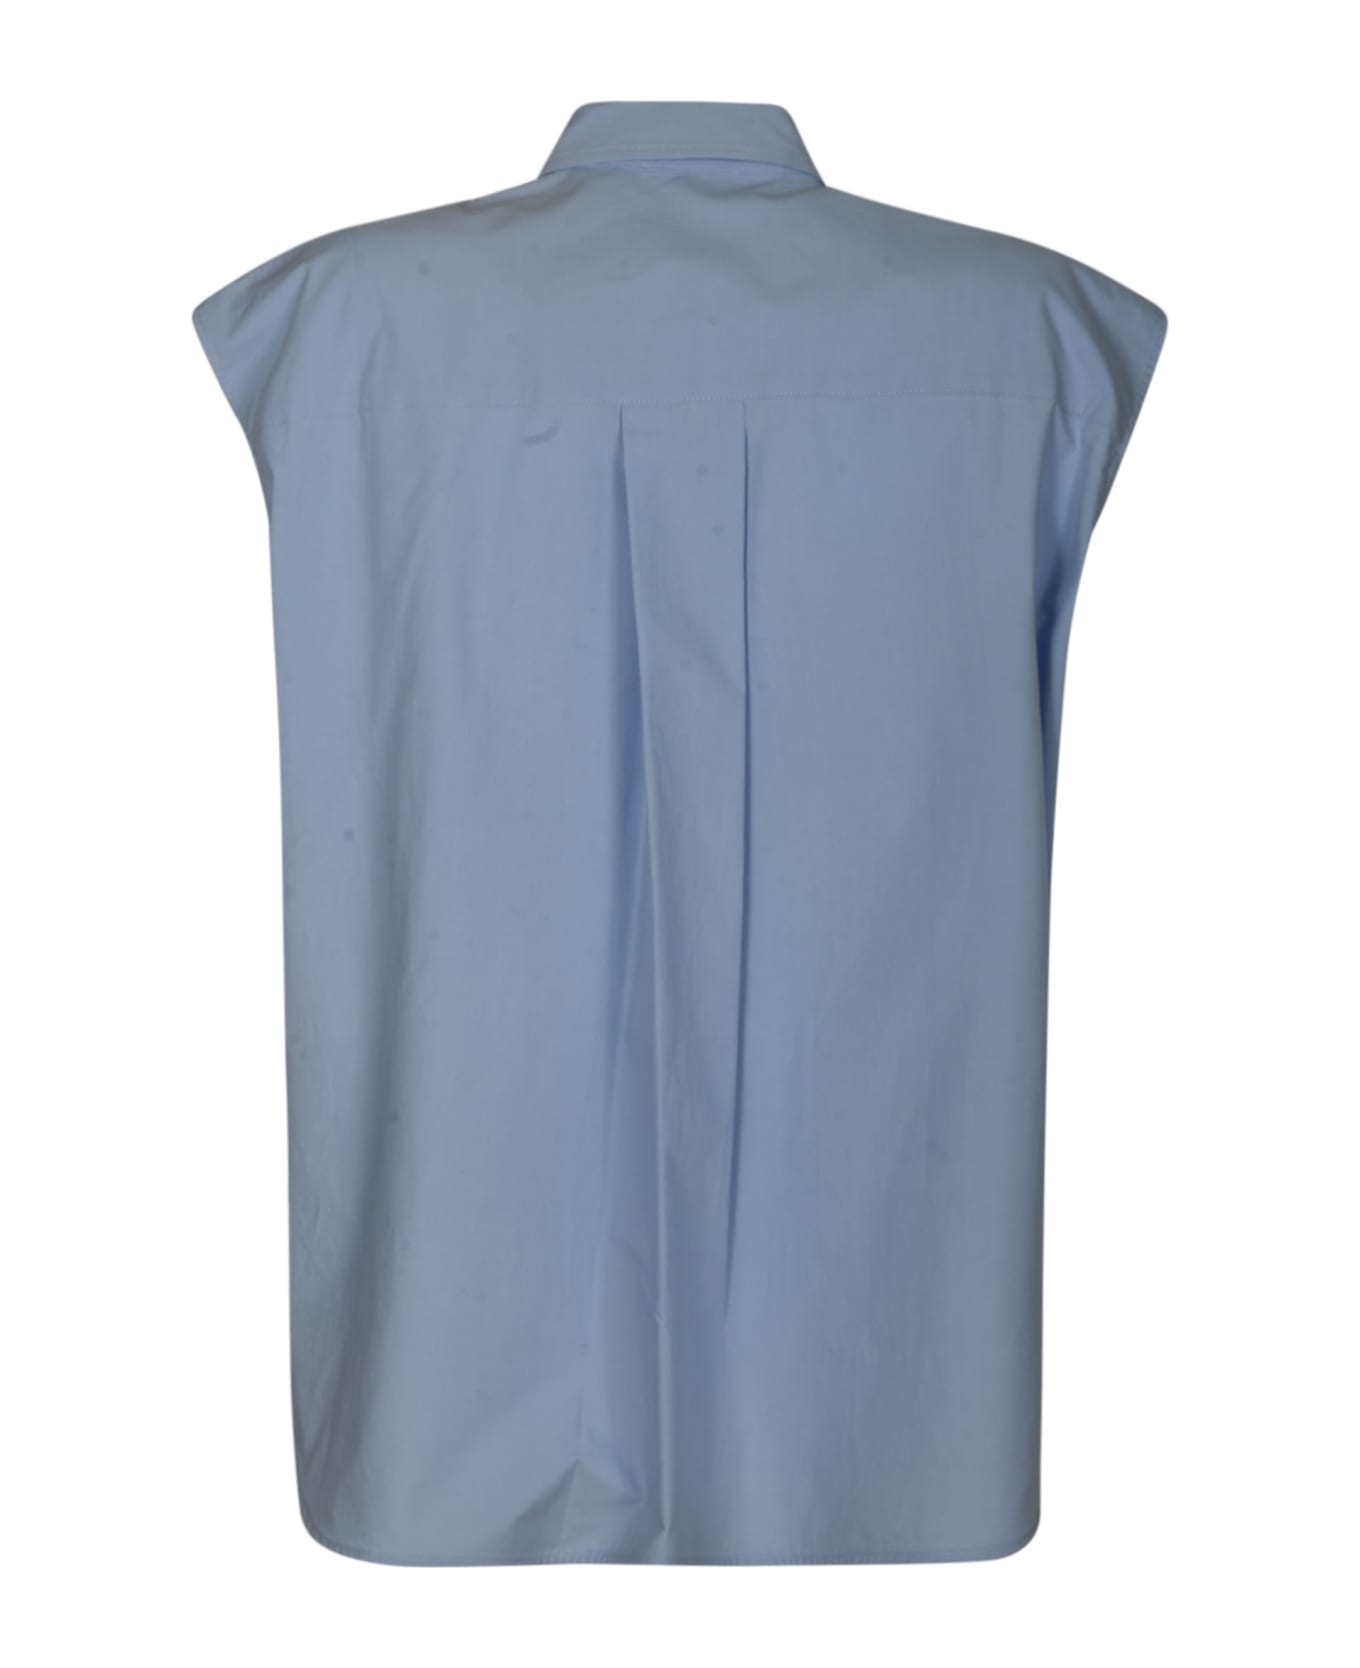 Parosh Embellished Sleeveless Shirt - Azure シャツ